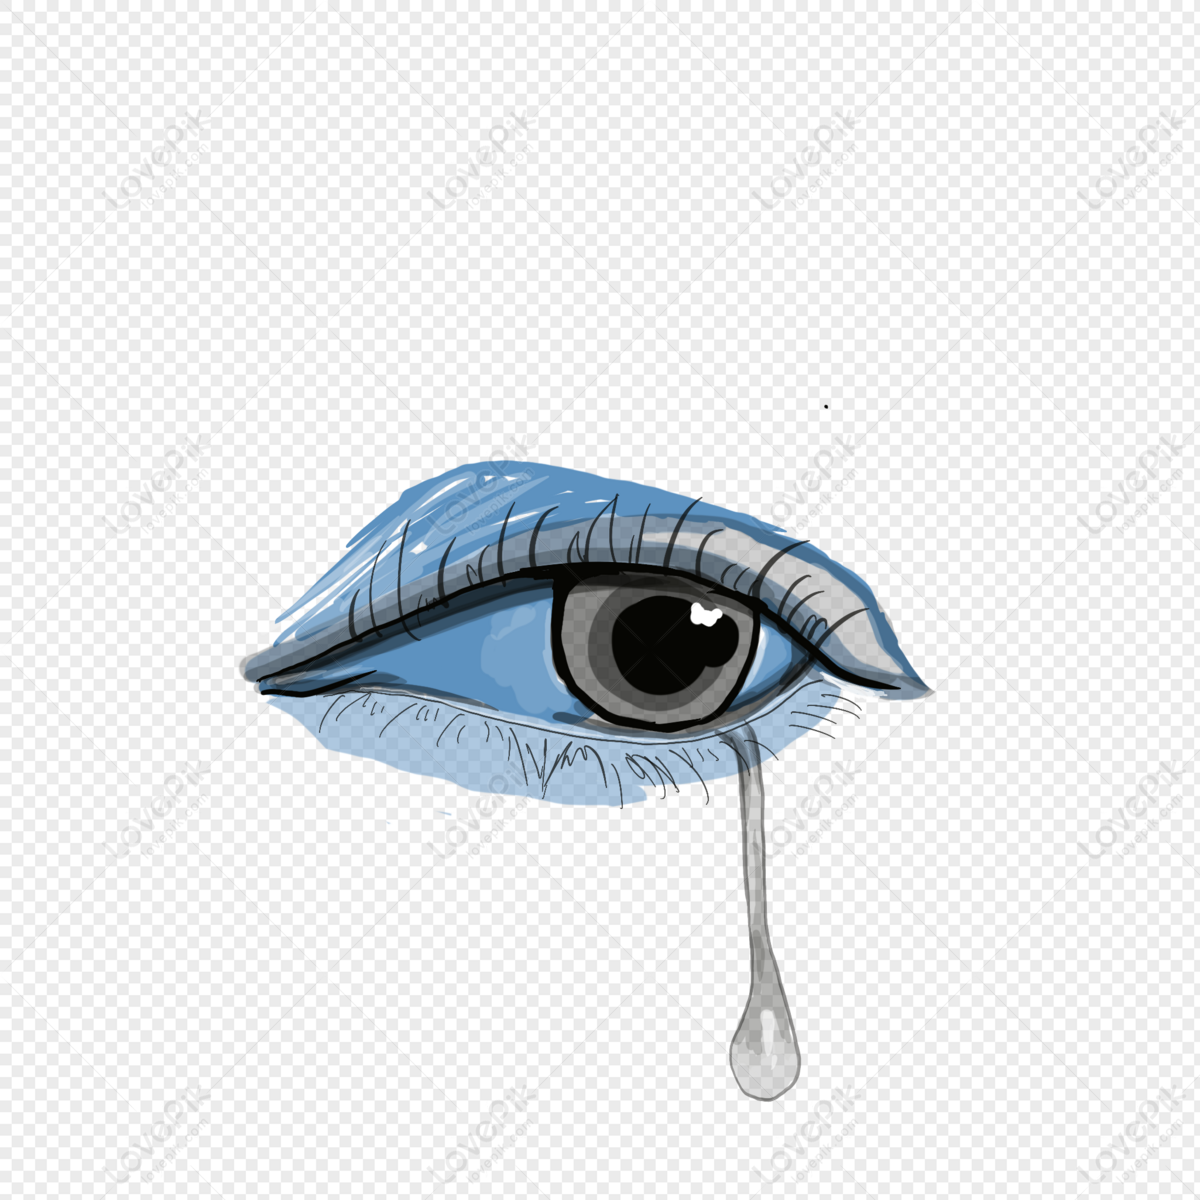 Những đôi mắt đẫm lệ luôn mang trong mình một sức mạnh và cảm xúc khó tả. Tải về bộ ảnh PNG miễn phí này để đắm chìm vào chúng và cảm nhận tình cảm chân thành trong từng giọt nước mắt.